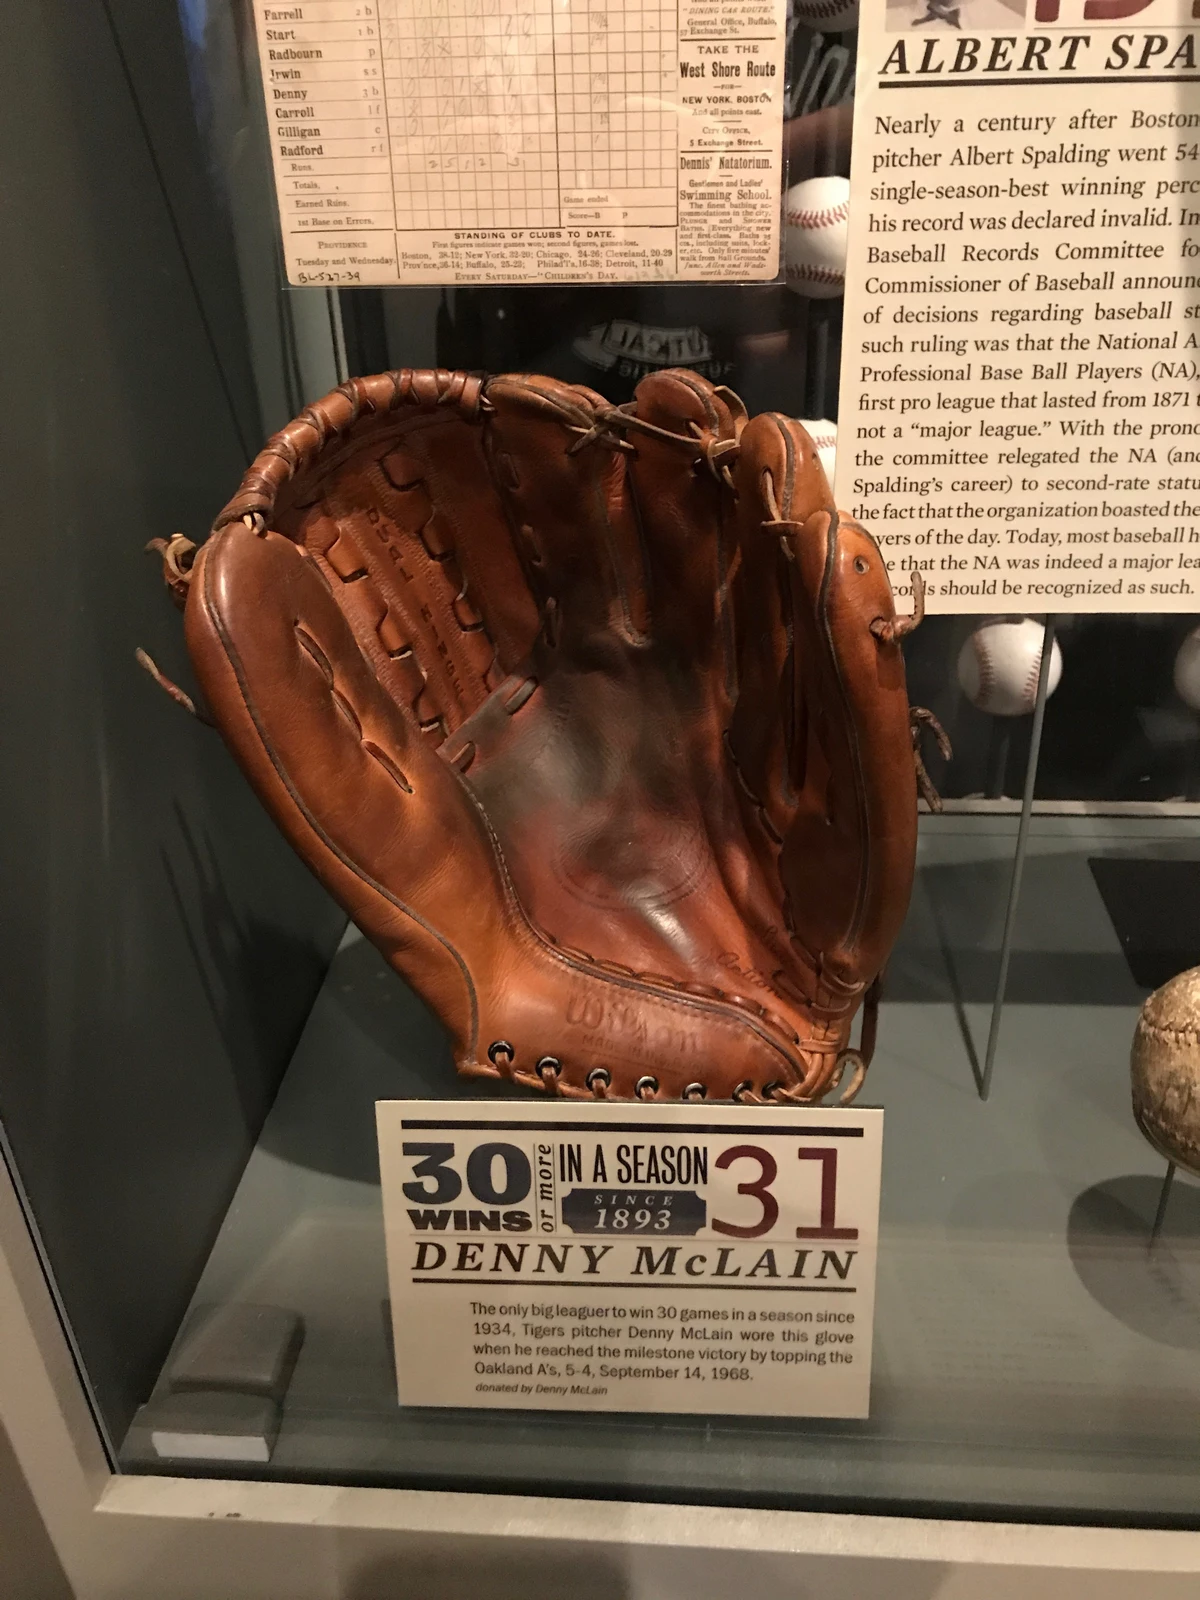 Denny McLain - Detroit Tigers Pitcher